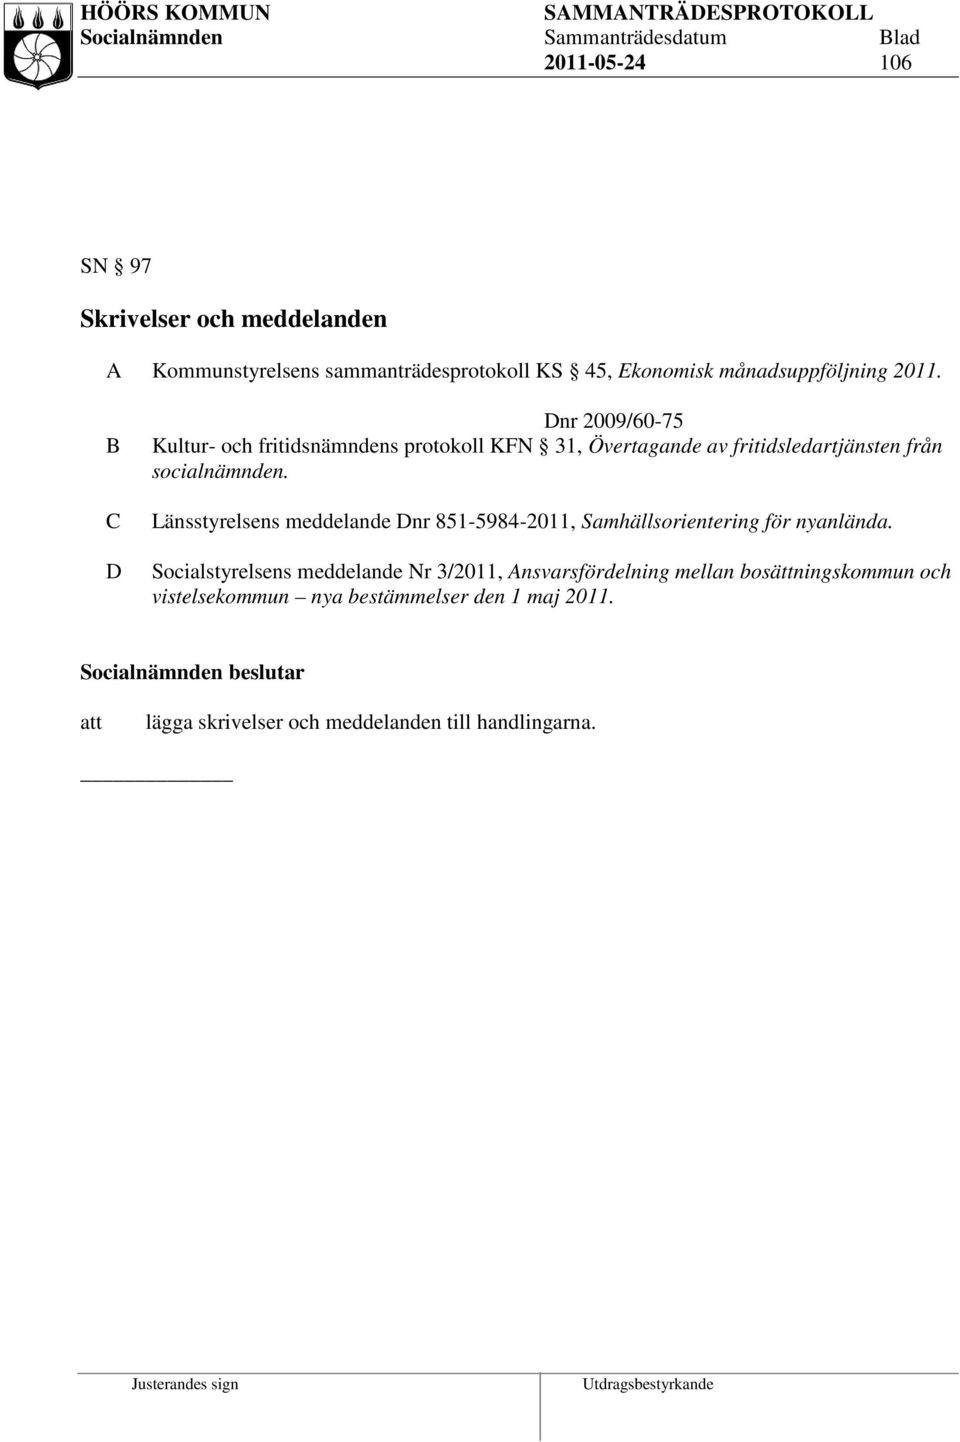 Länsstyrelsens meddelande Dnr 851-5984-2011, Samhällsorientering för nyanlända.